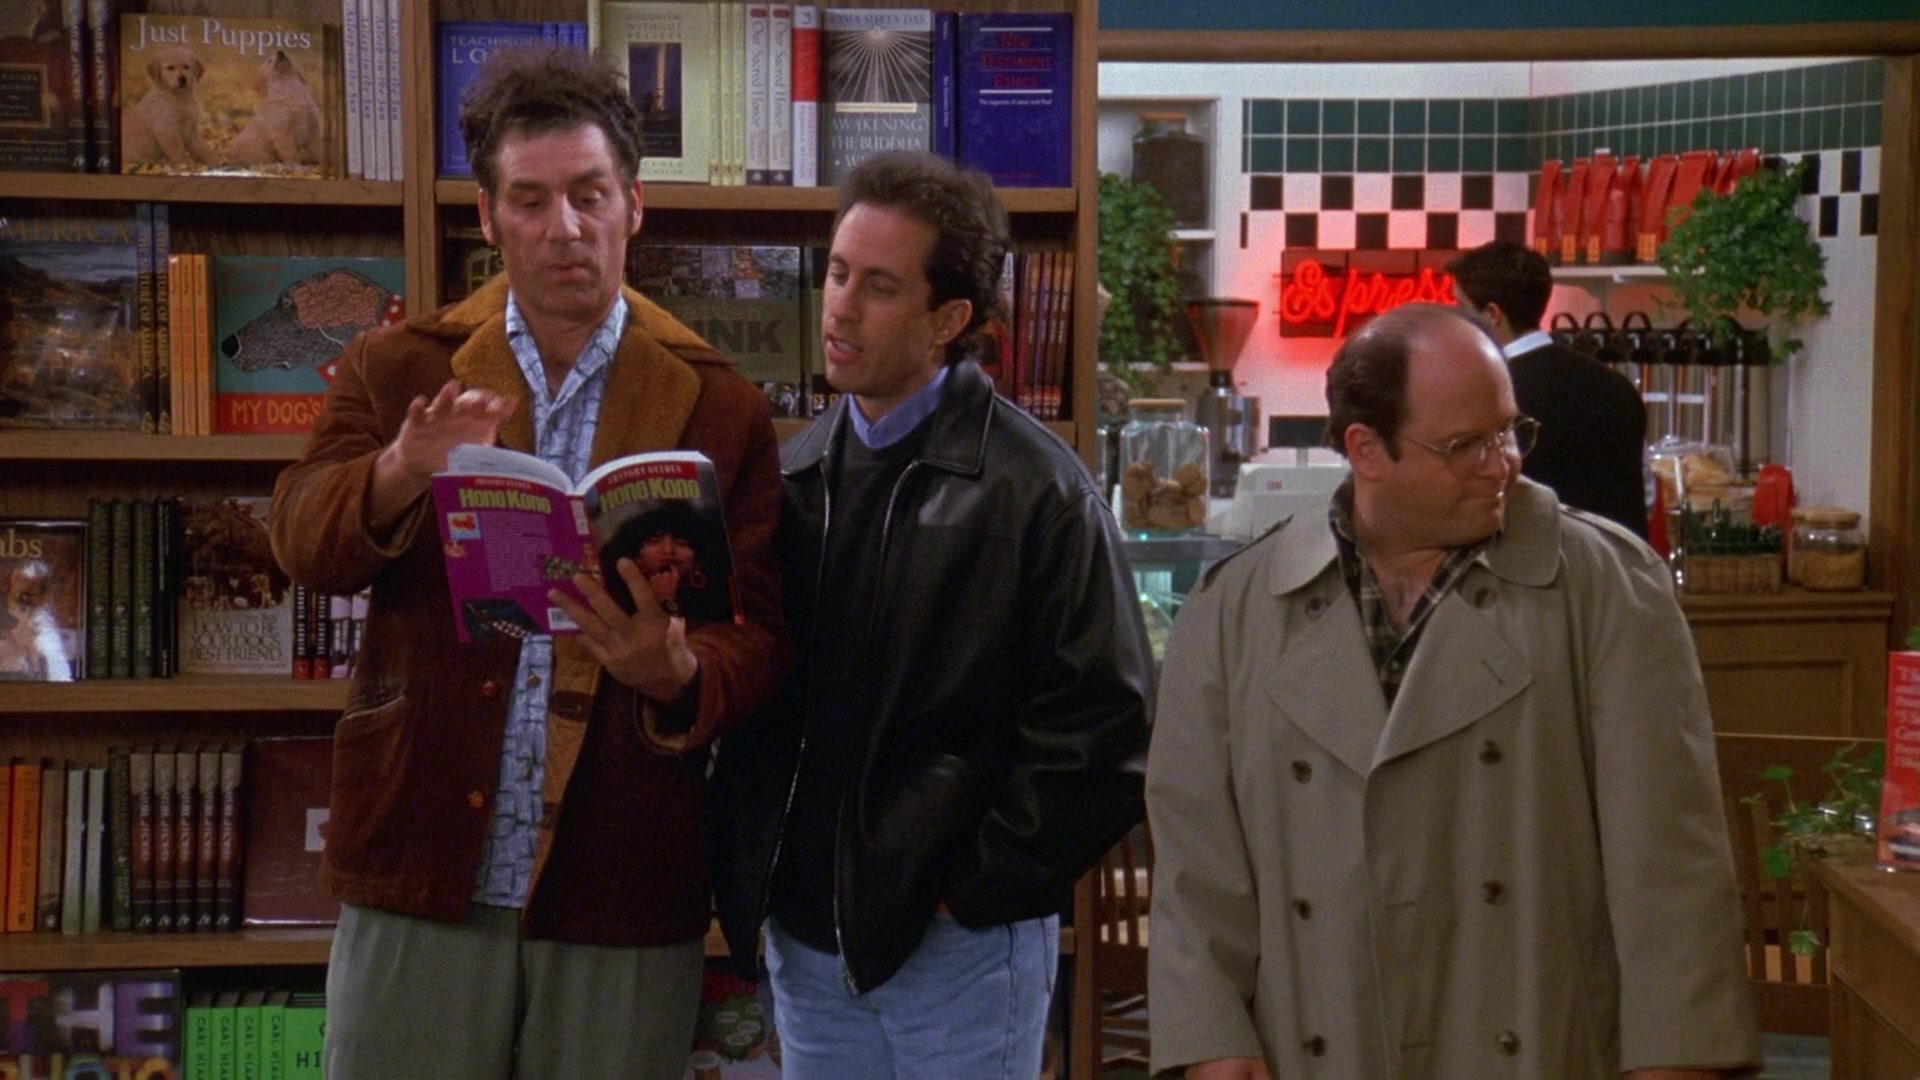 Brentano’s Store in Seinfeld Season 9 Episode 17 "The Bookstore" ...